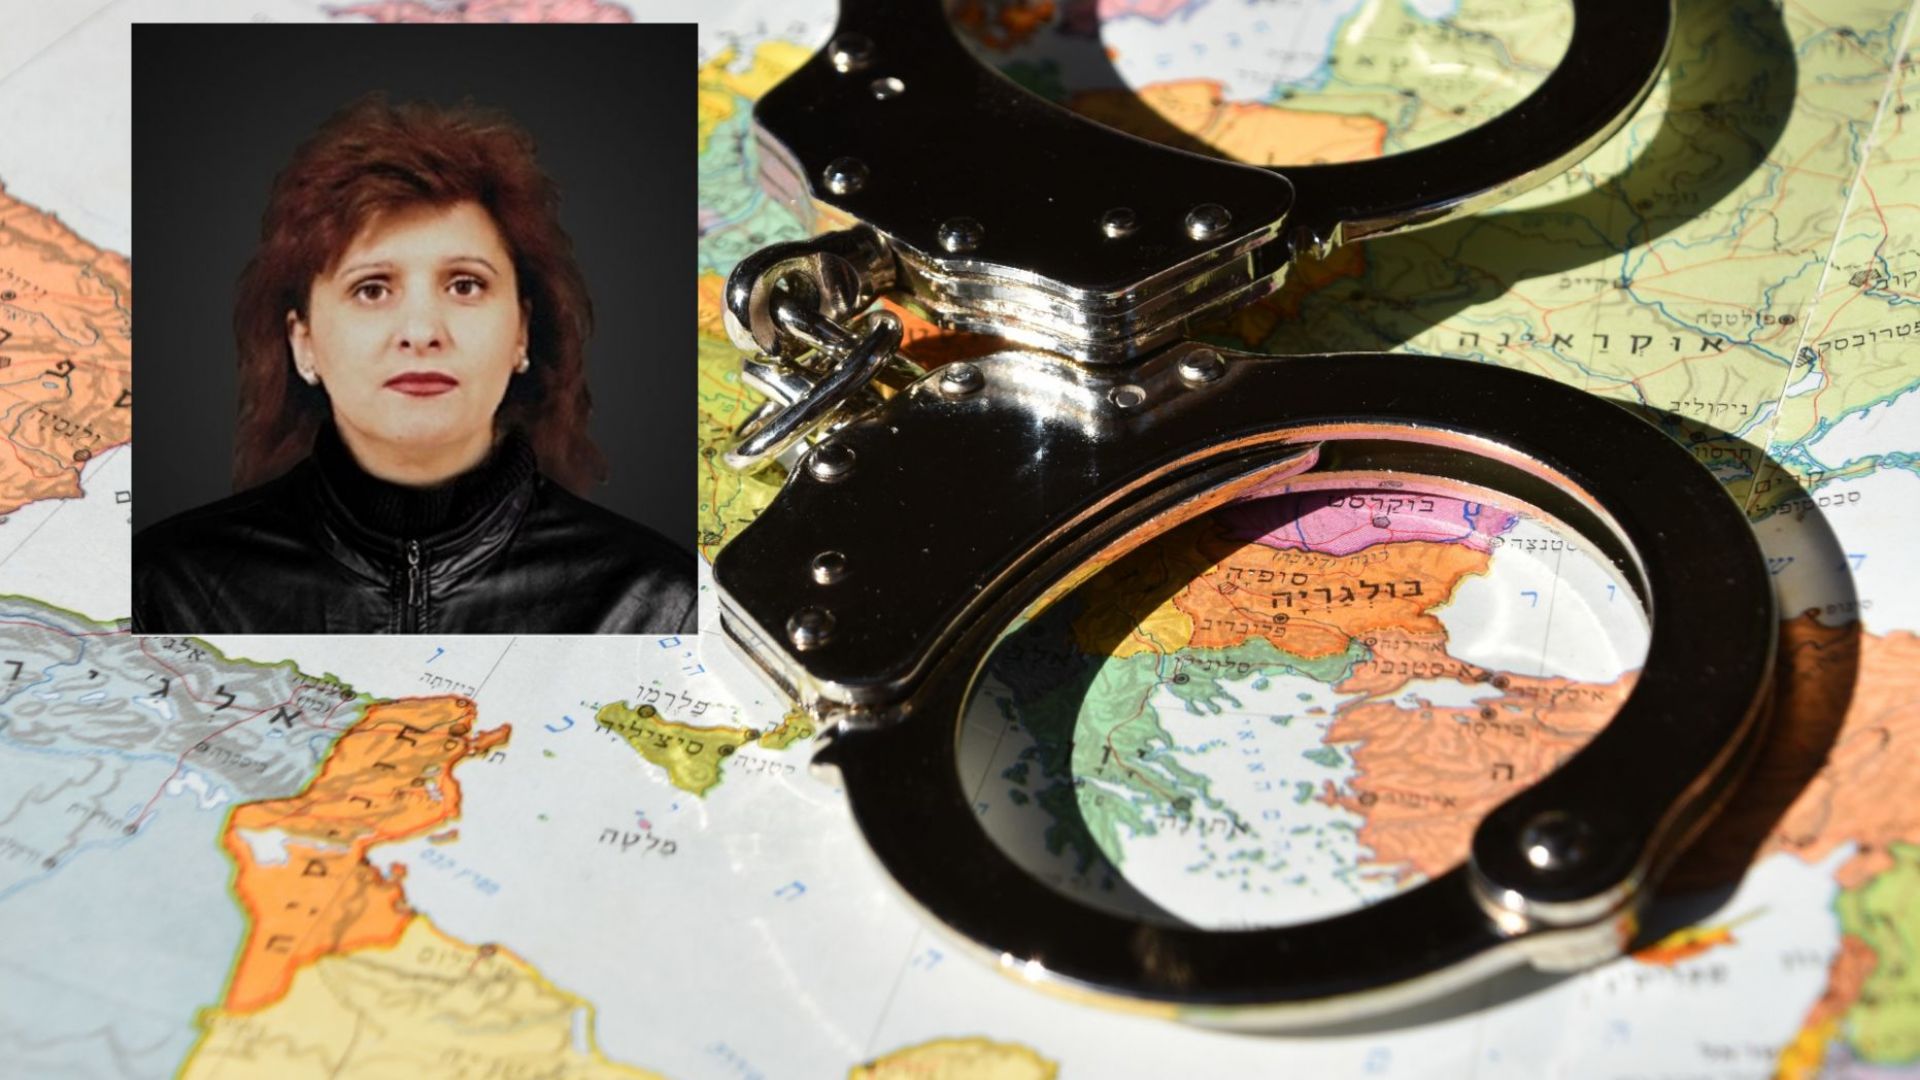 51-годишната българка Радина Жечева от Пловдив е сред най-издирваните жени